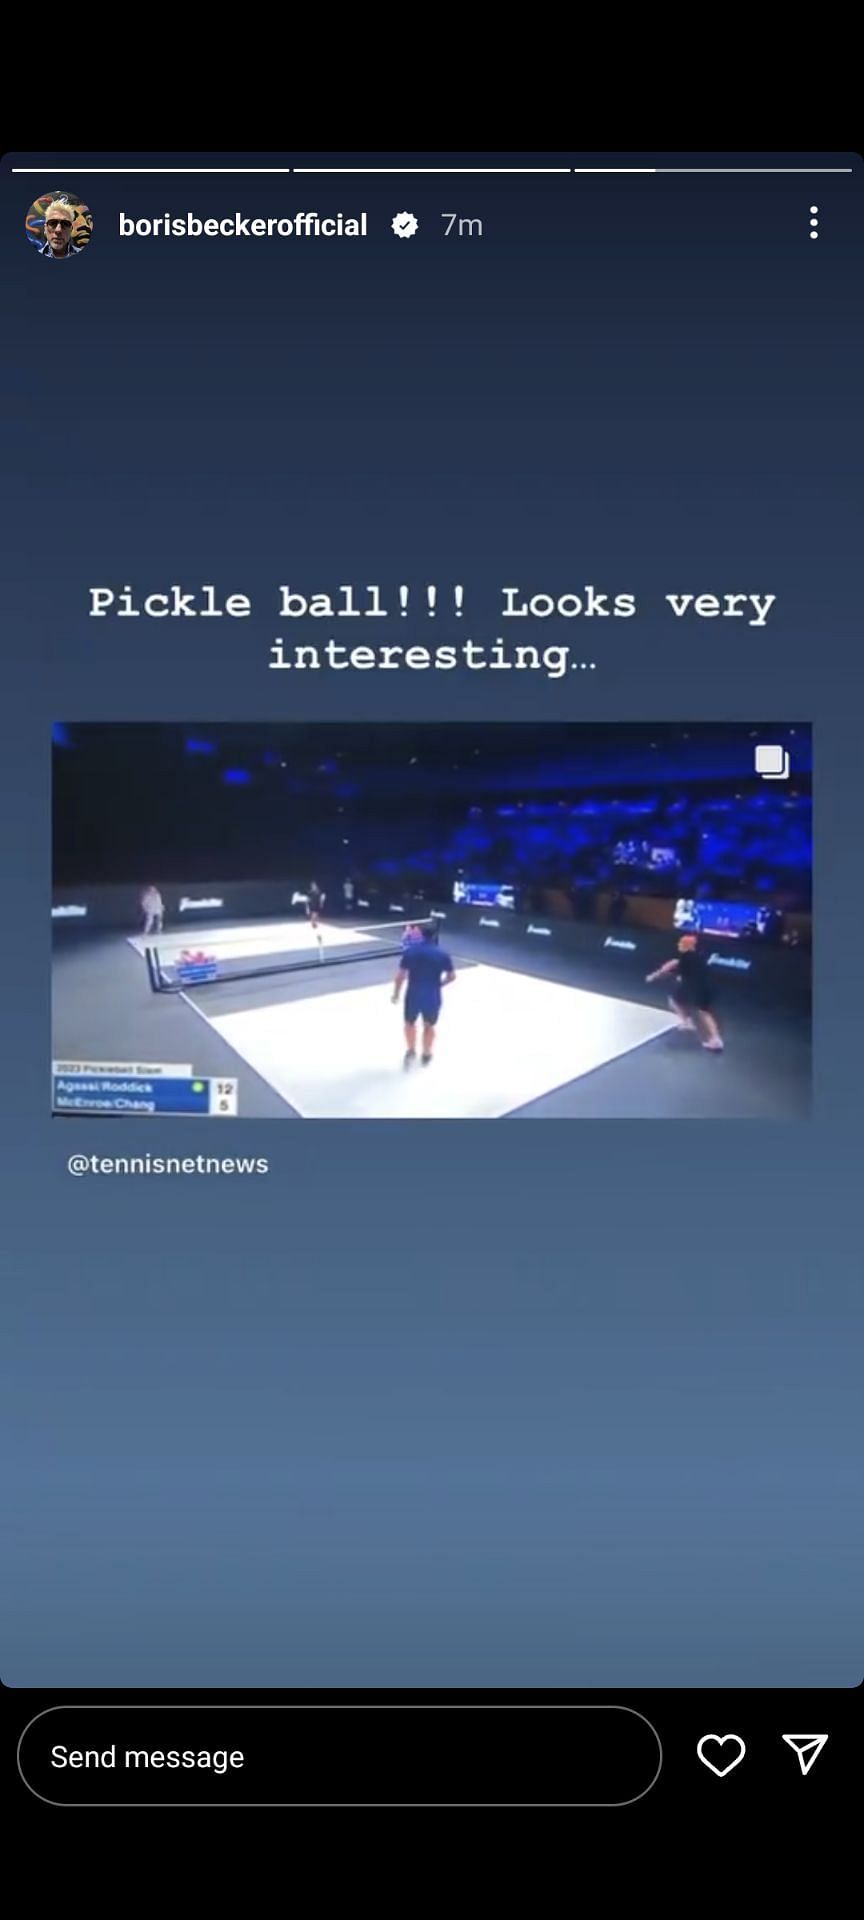 Boris Becker shared Pickle ball video